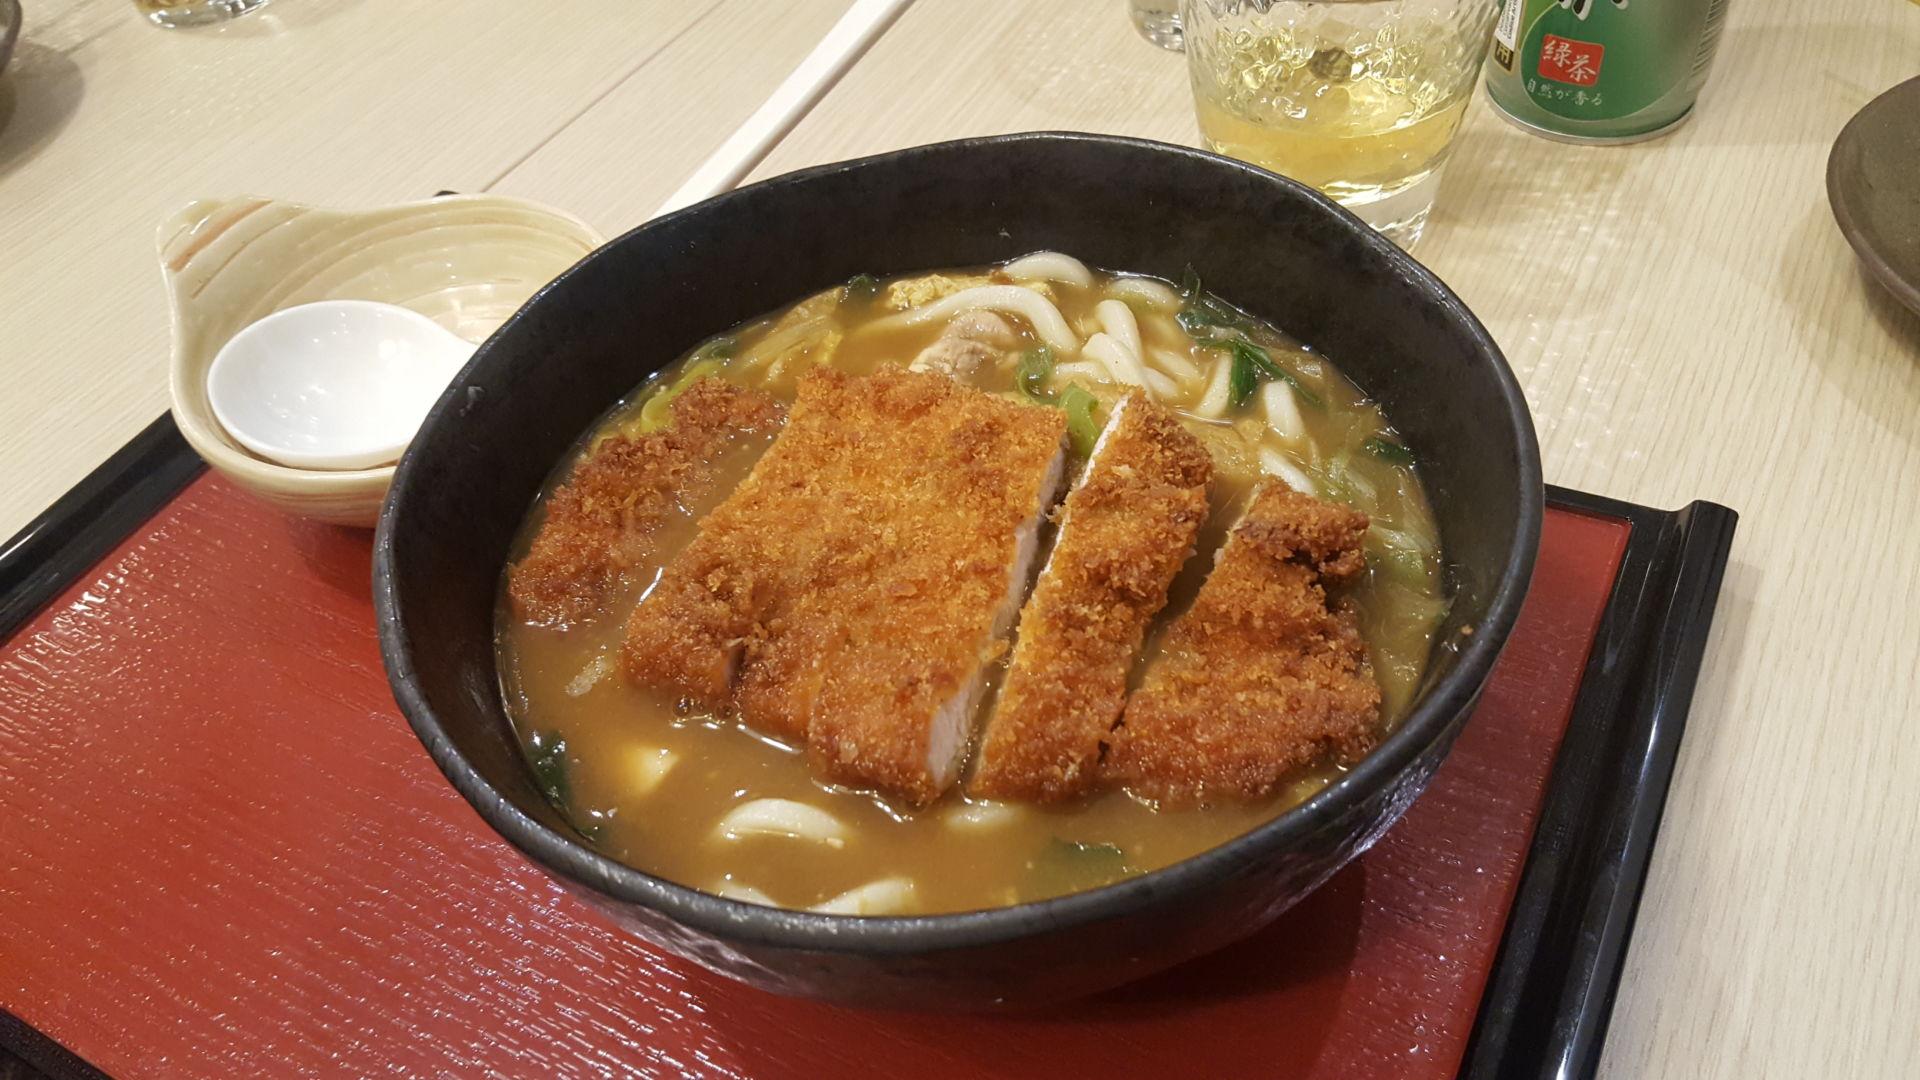 katsu curry udon tonkatsu ricetta tonkatsu giapponese cotoletta di maiale impanata